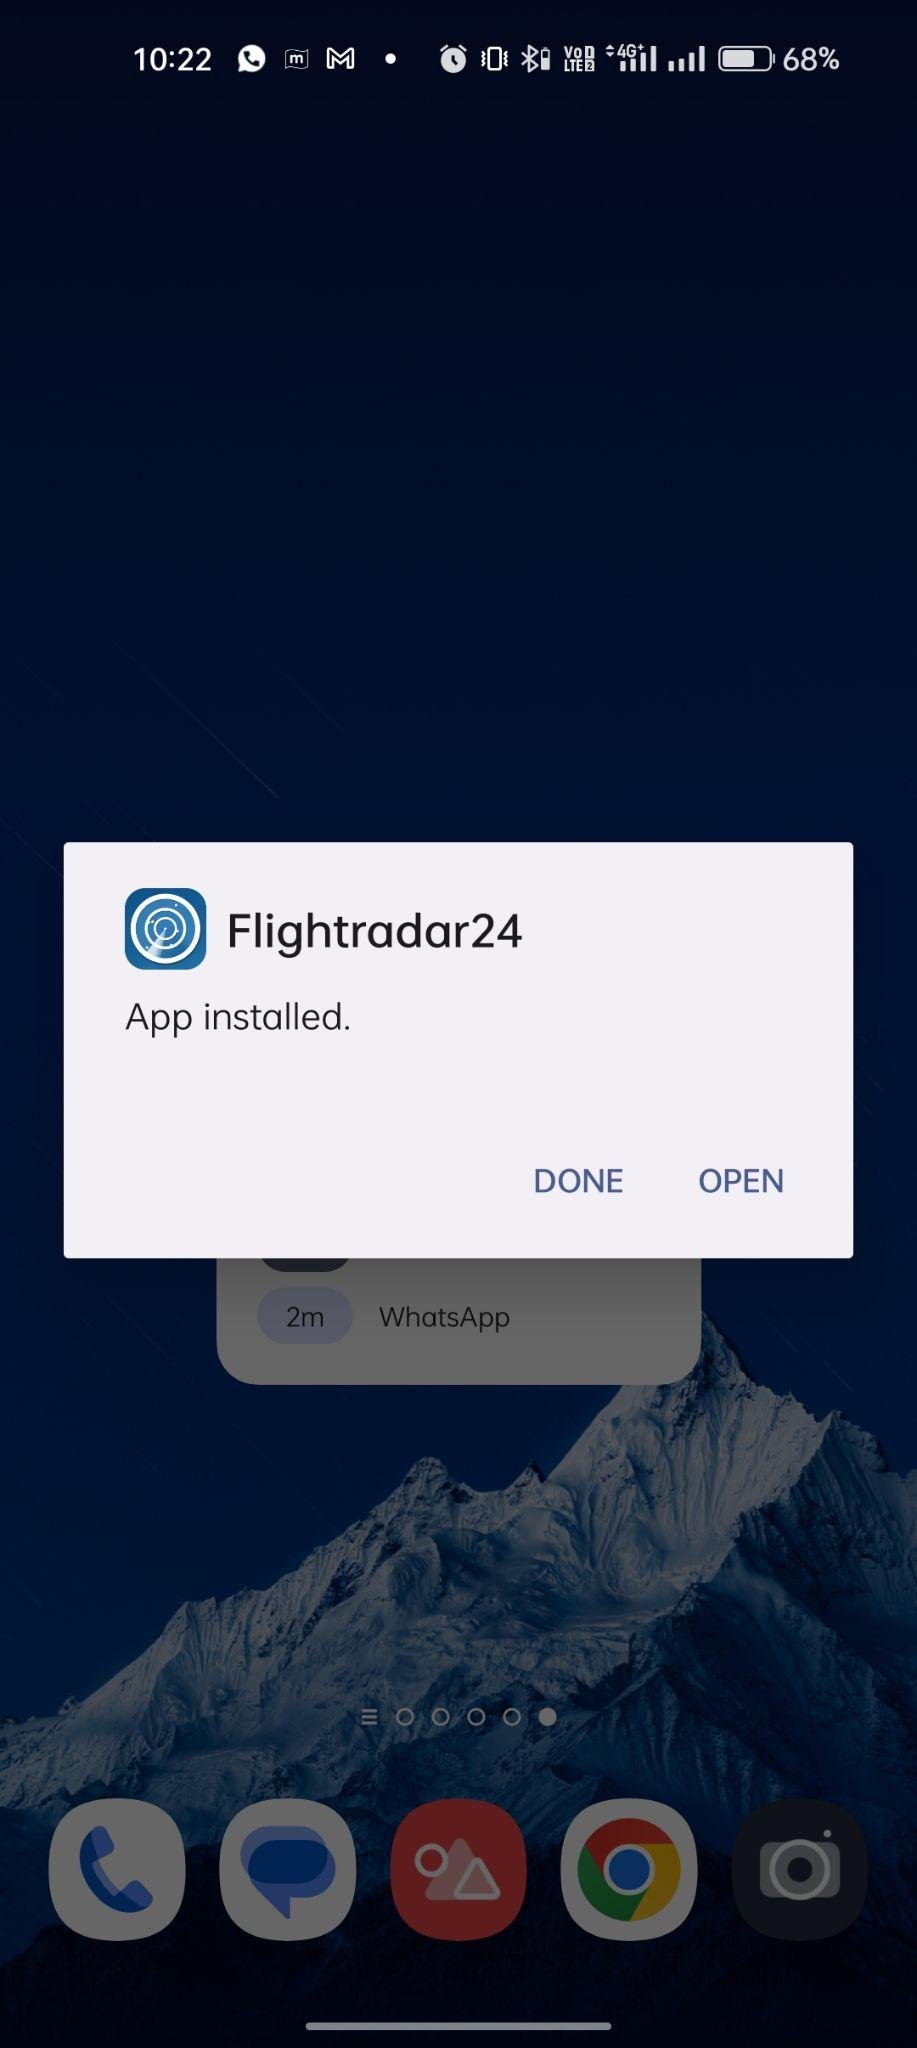 Flightradar24 apk installed 